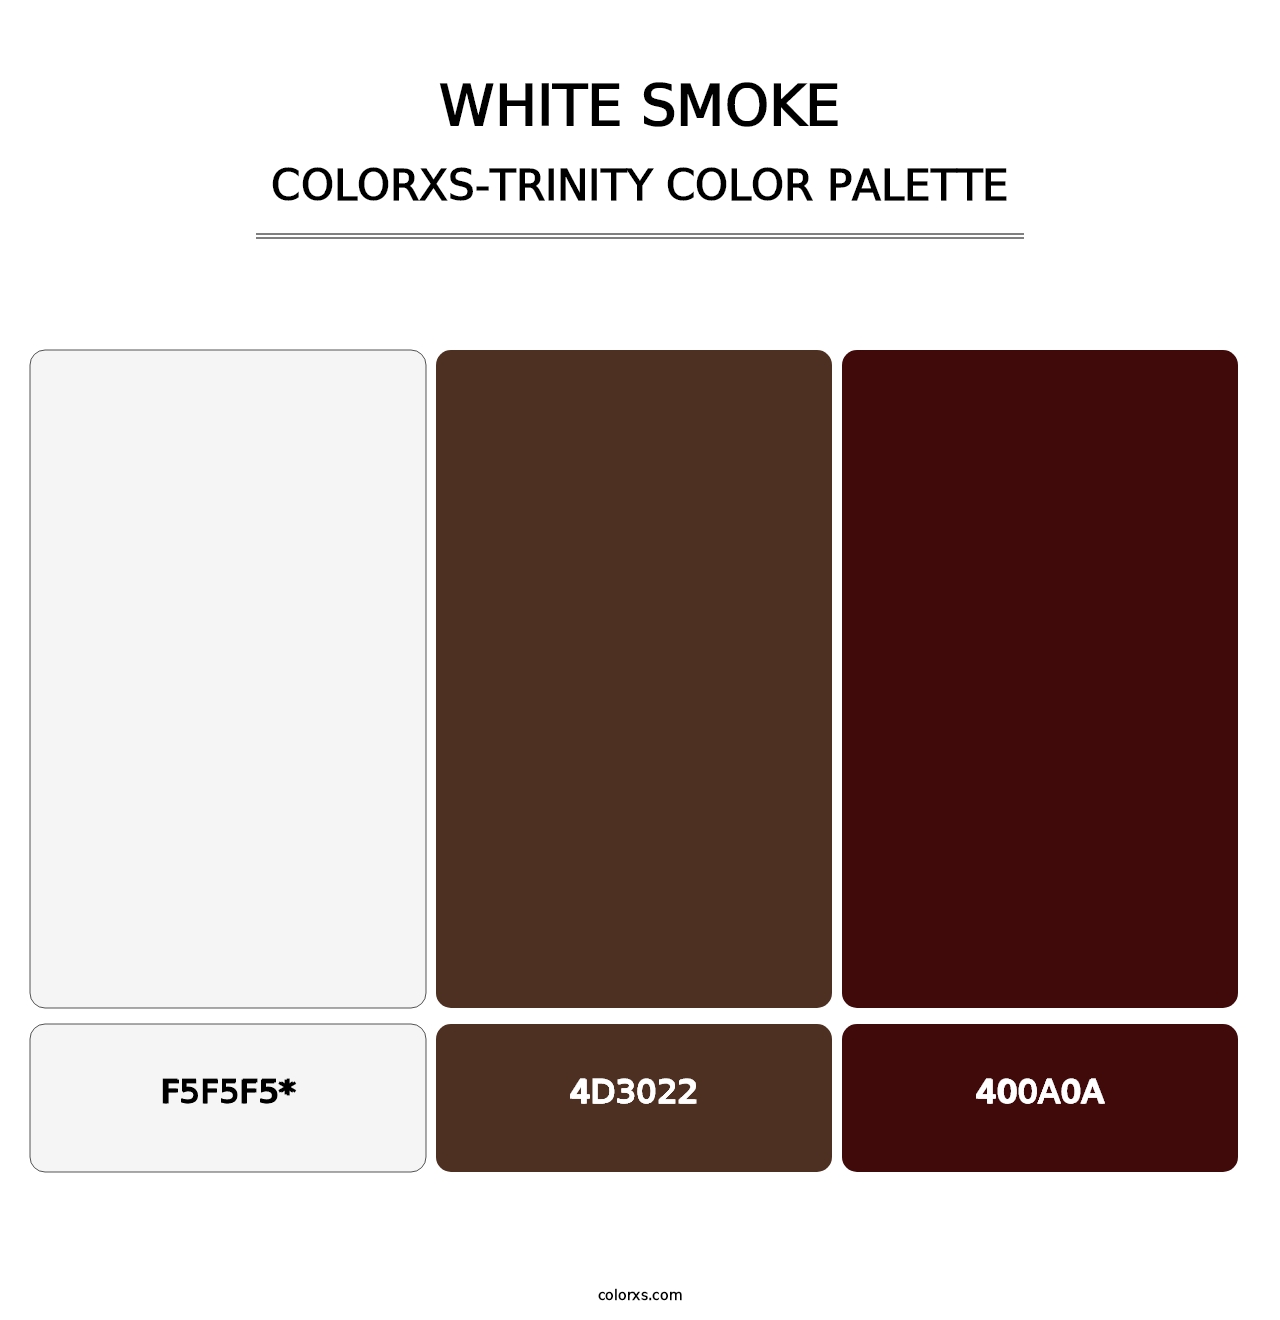 White Smoke - Colorxs Trinity Palette